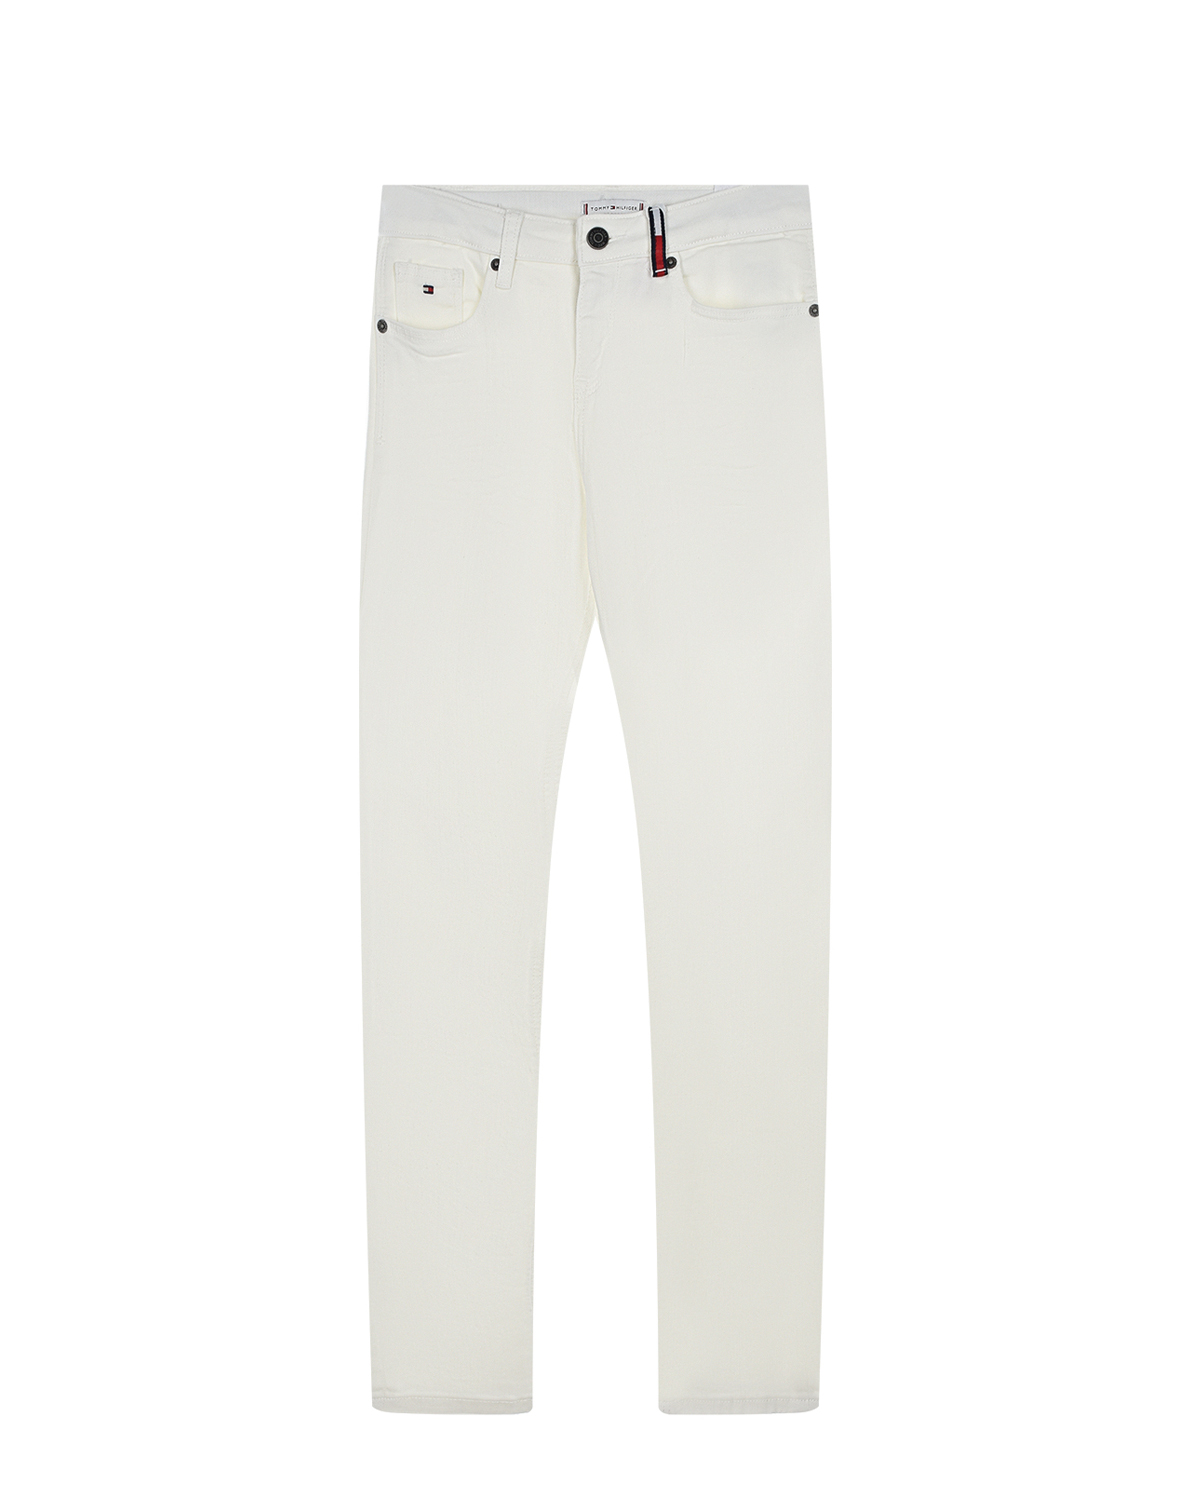 Белые джинсы skinny fit Tommy Hilfiger детские - фото 1